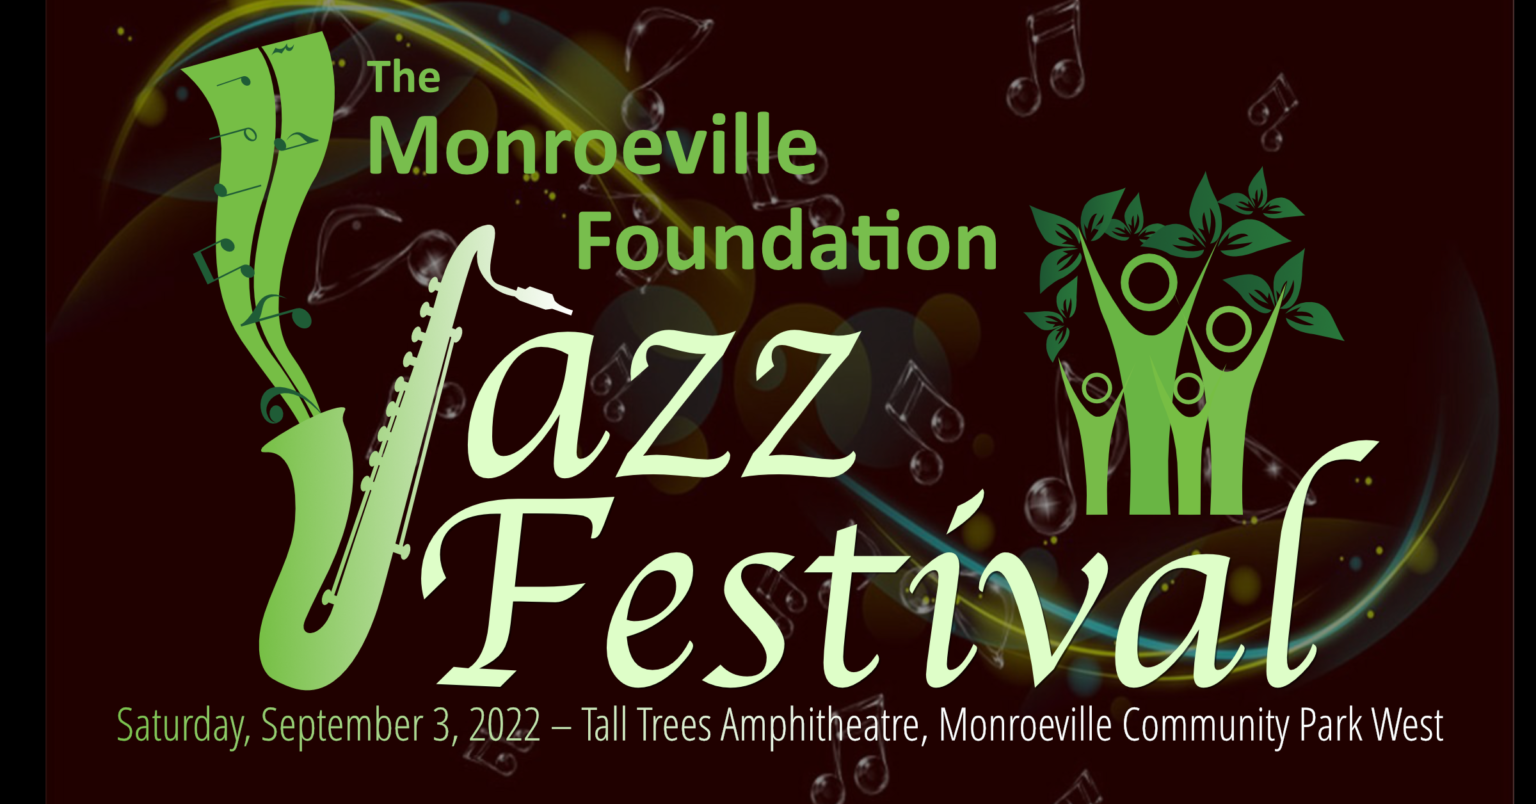 Monroeville Jazz Festival On September 3 Monroeville Foundation